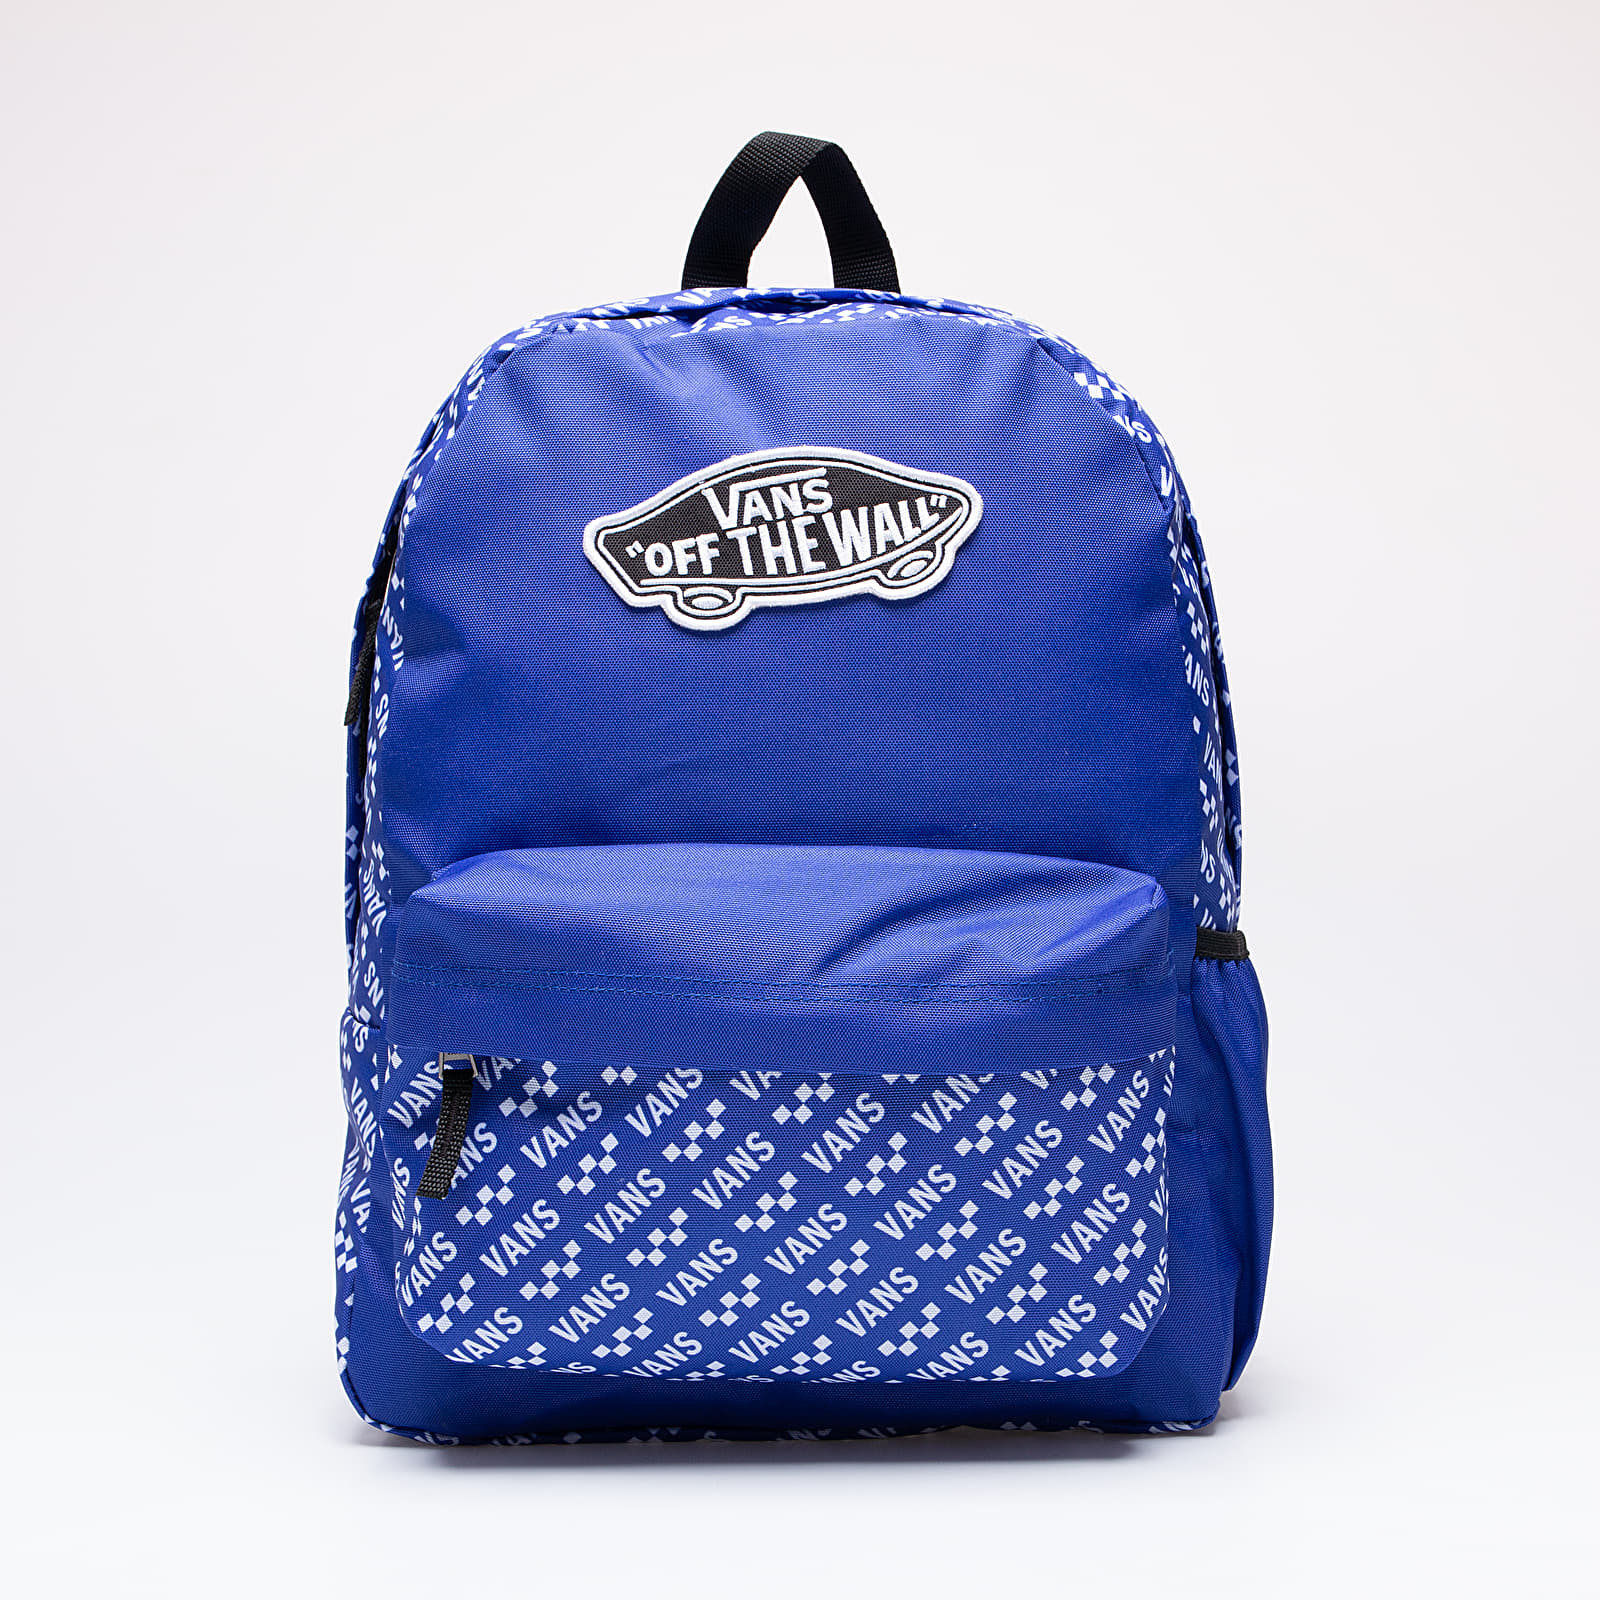 Rucsacuri Vans Street Sport Realm Backpack Royal Blue/ Bran